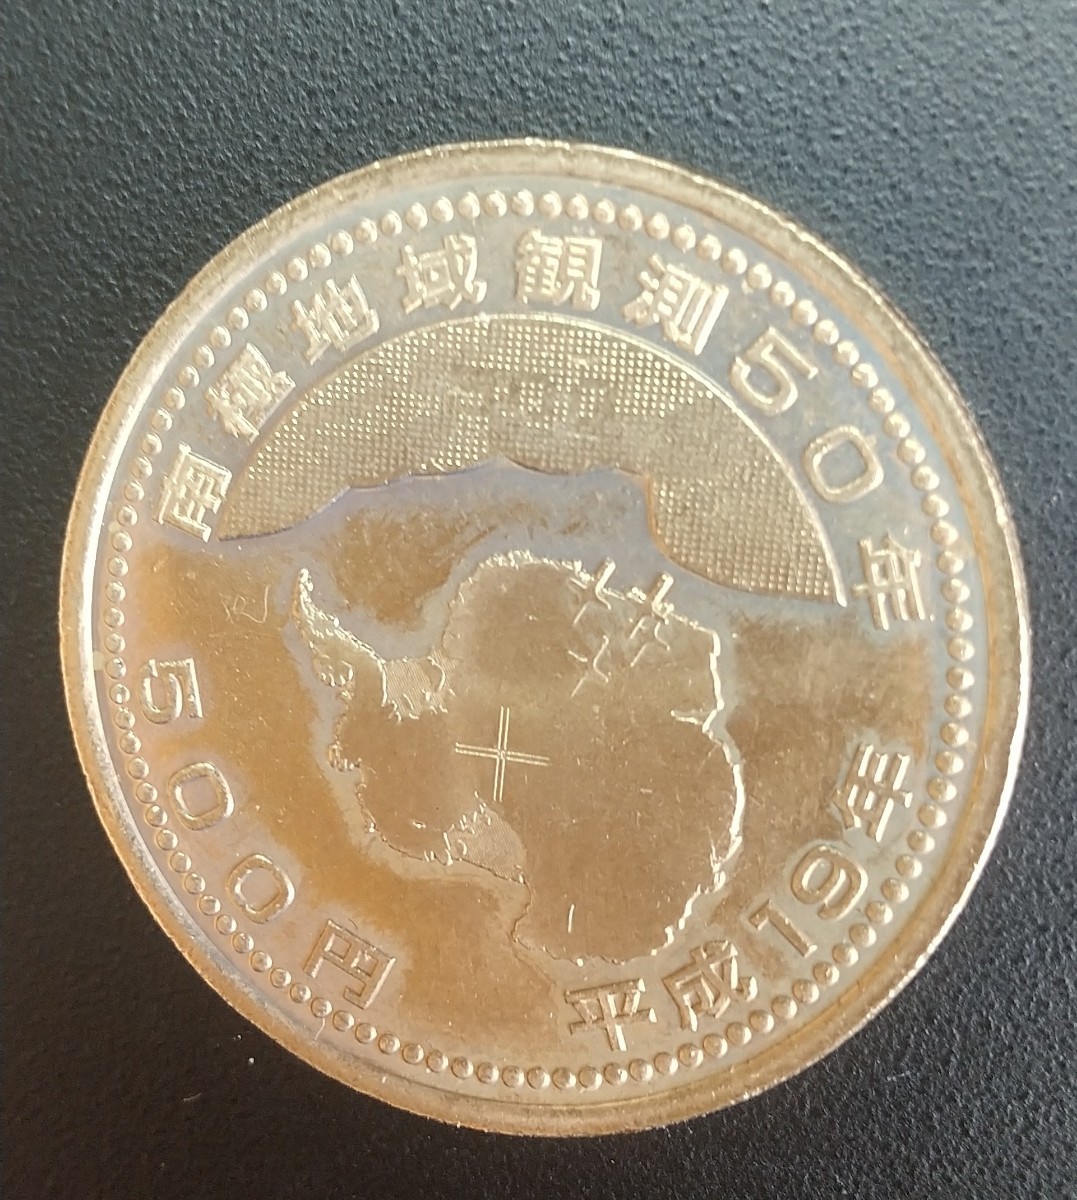 5058 未使用 南極地域観測50年記念500円 硬貨_画像2